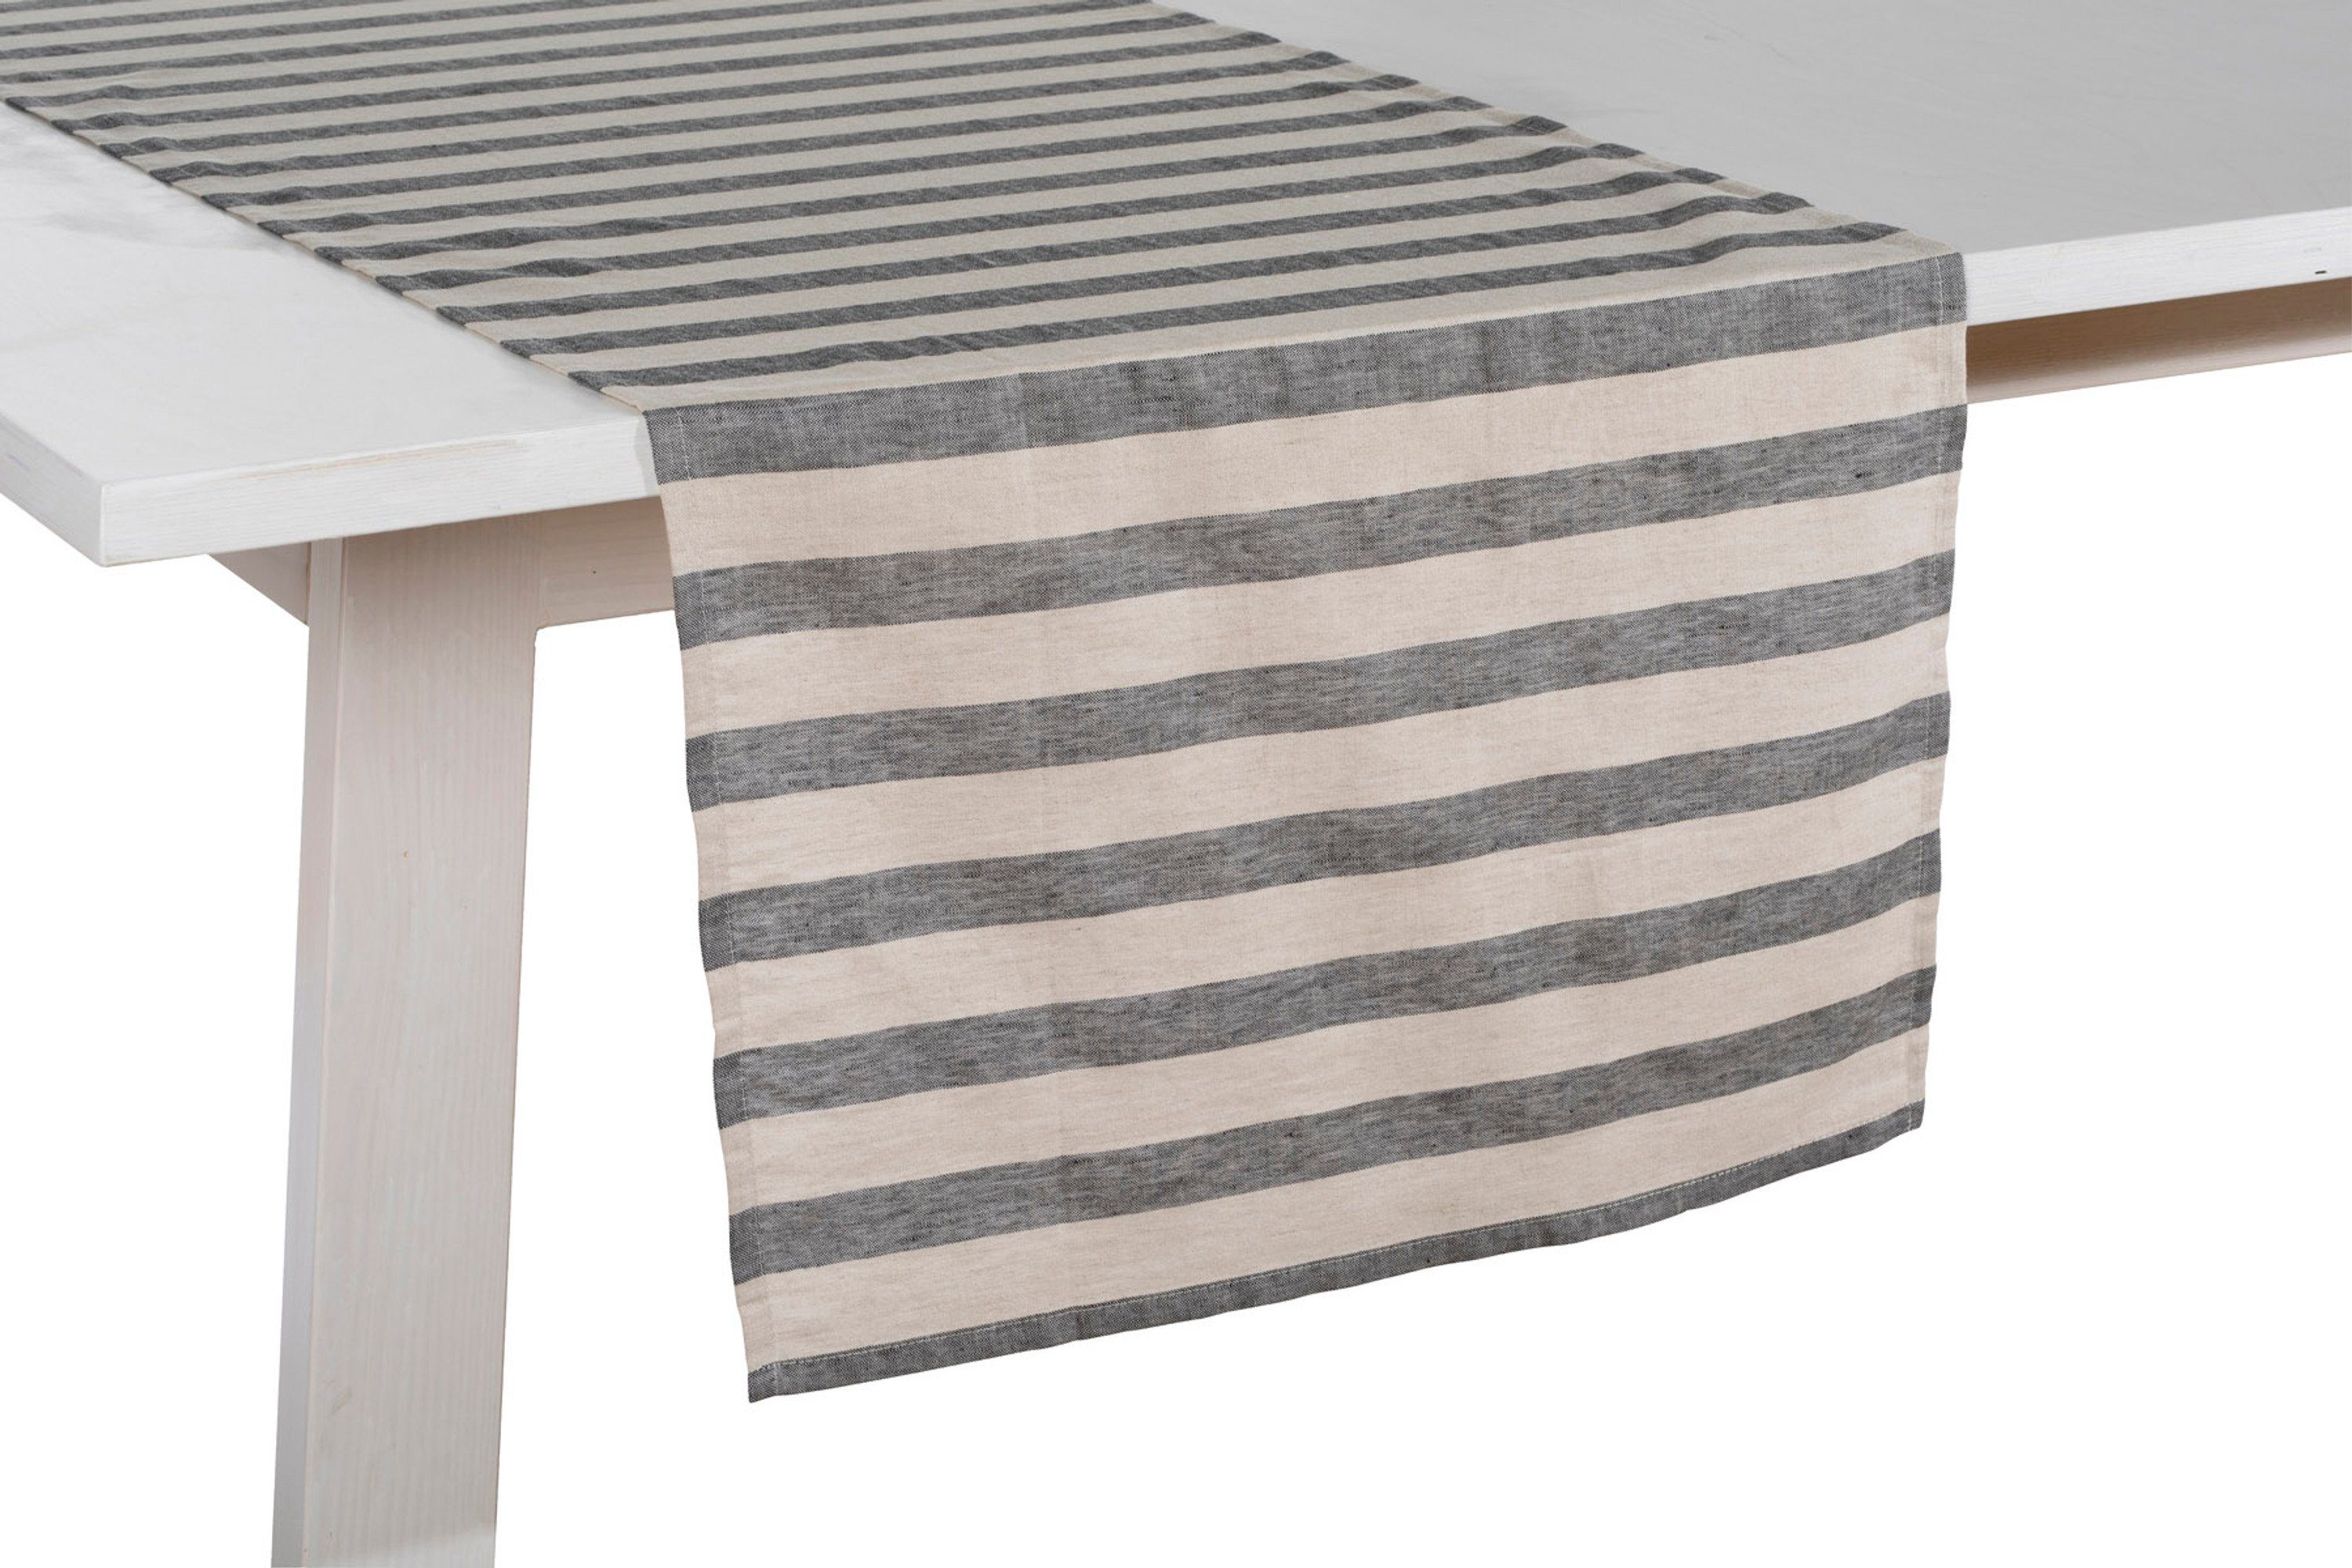 PICHLER Tischband Pichler Tischläufer aus der Serie Niclas, 50 x 150 cm, grau/weiß (1-tlg)